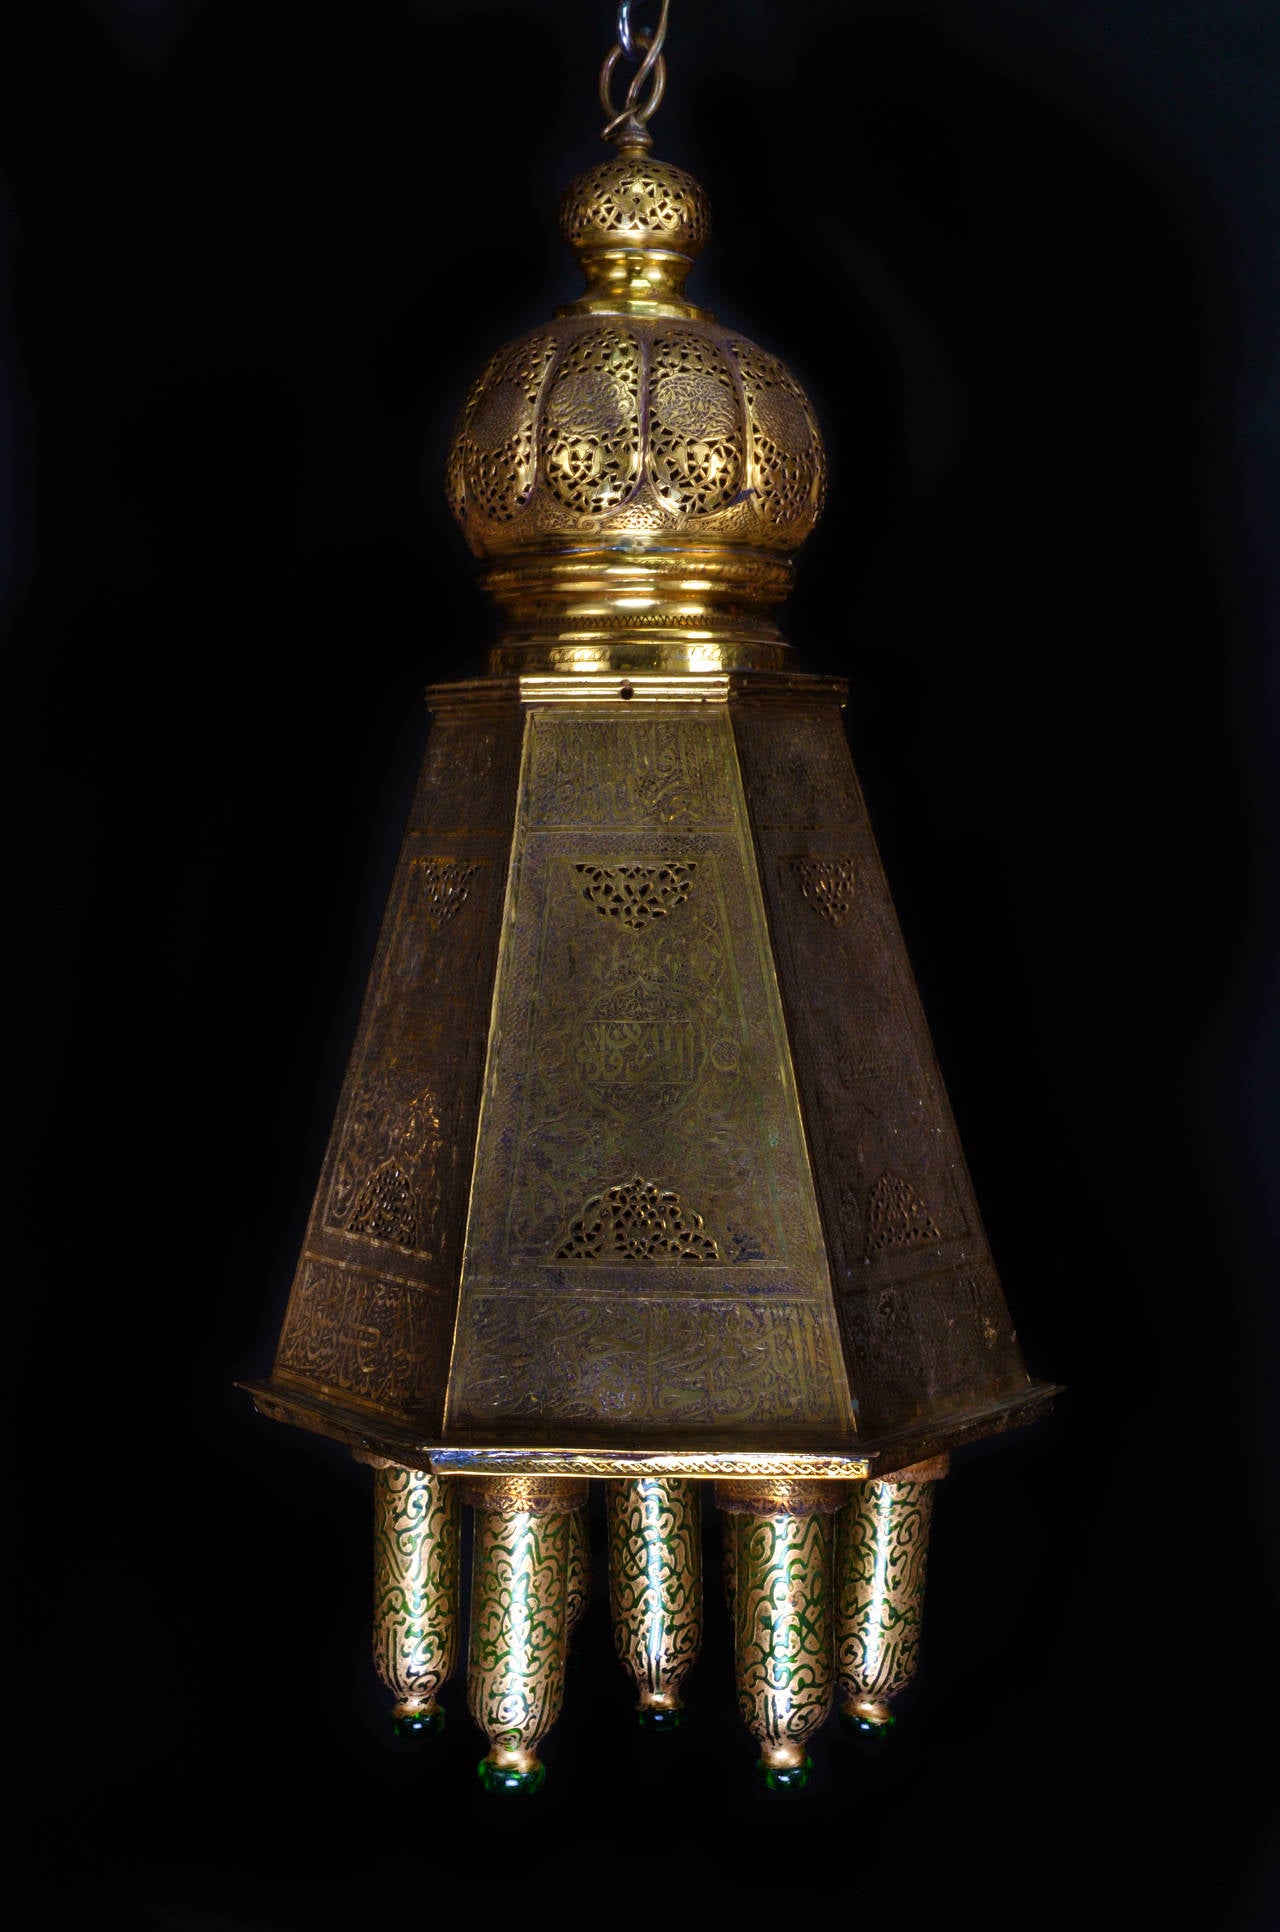 Un lustre lanterne multi-lumière de style marocain islamique octogonal unique en laiton réticulé et en verre doré vert, finement détaillé et agrémenté d'écritures islamiques et d'abat-jour en verre soufflé vert décoré de dorures.